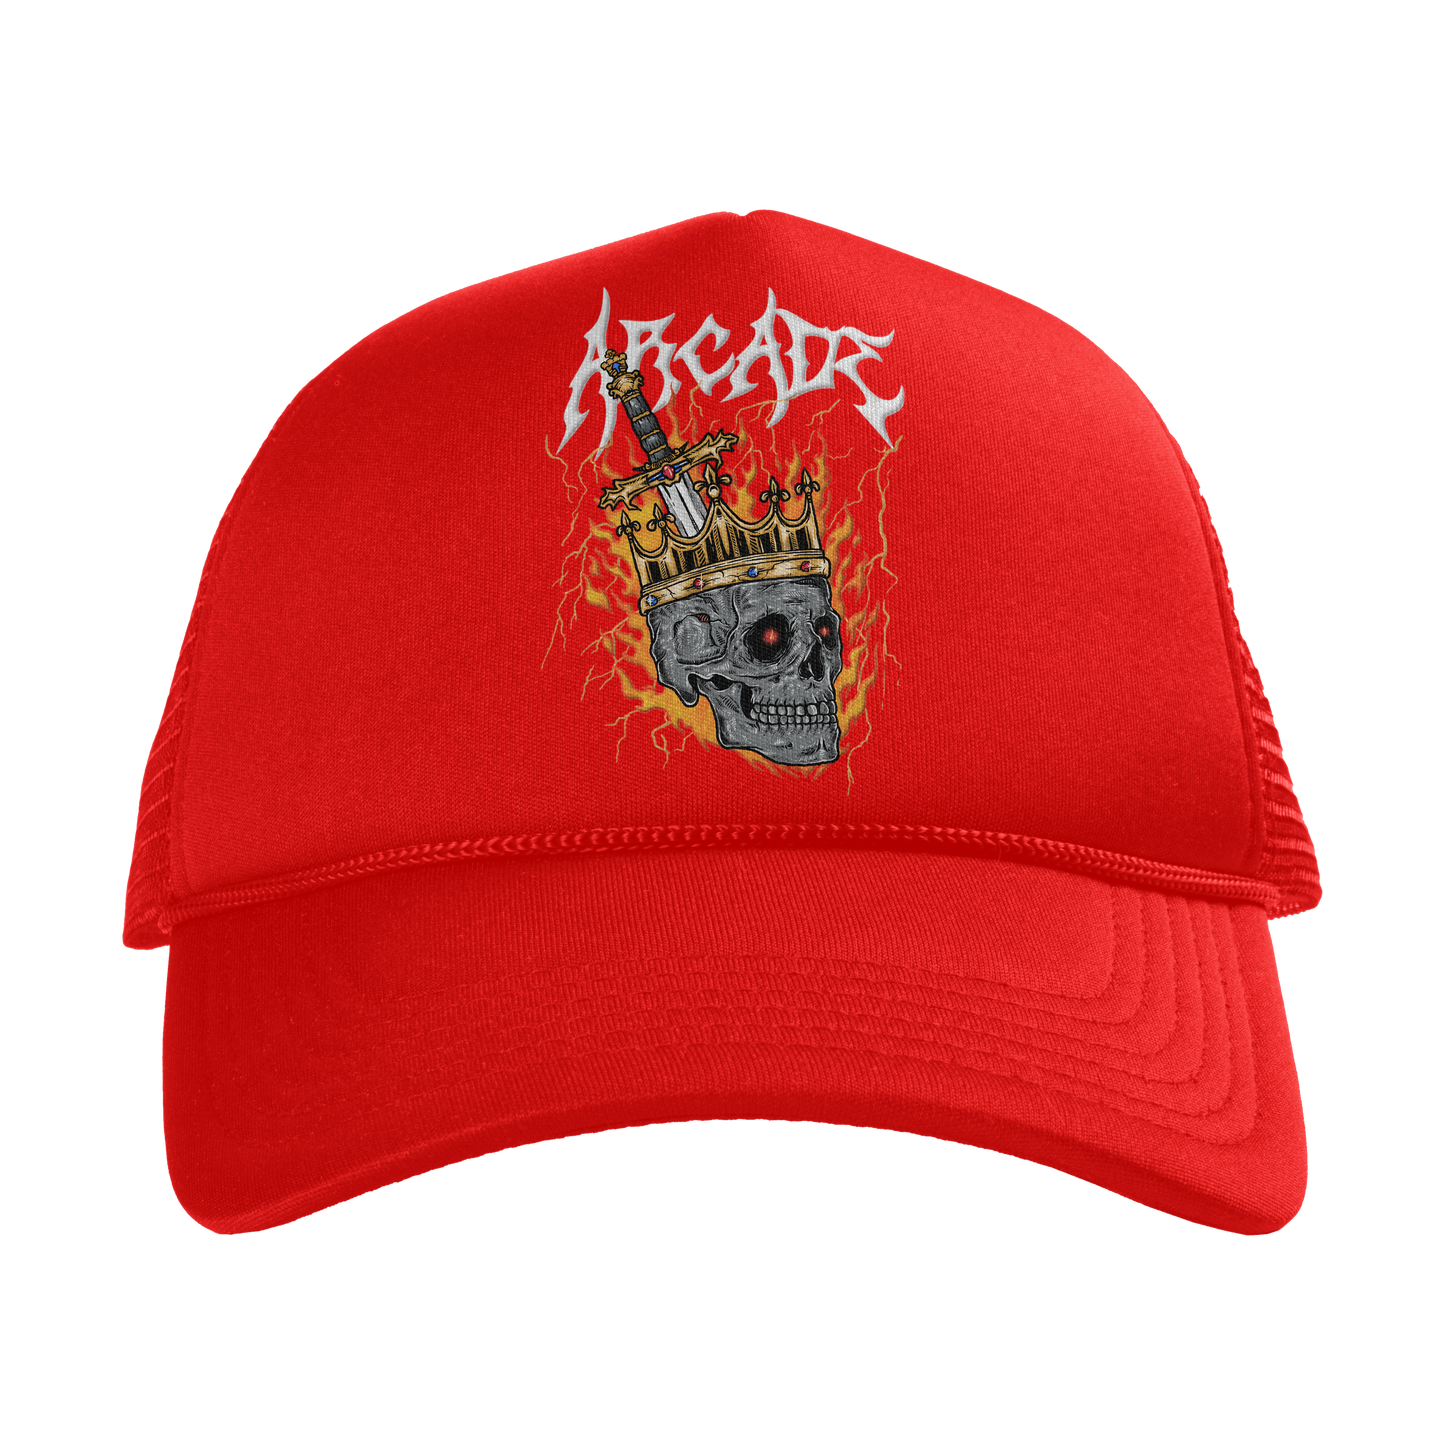 All Kings Fall Trucker Hat